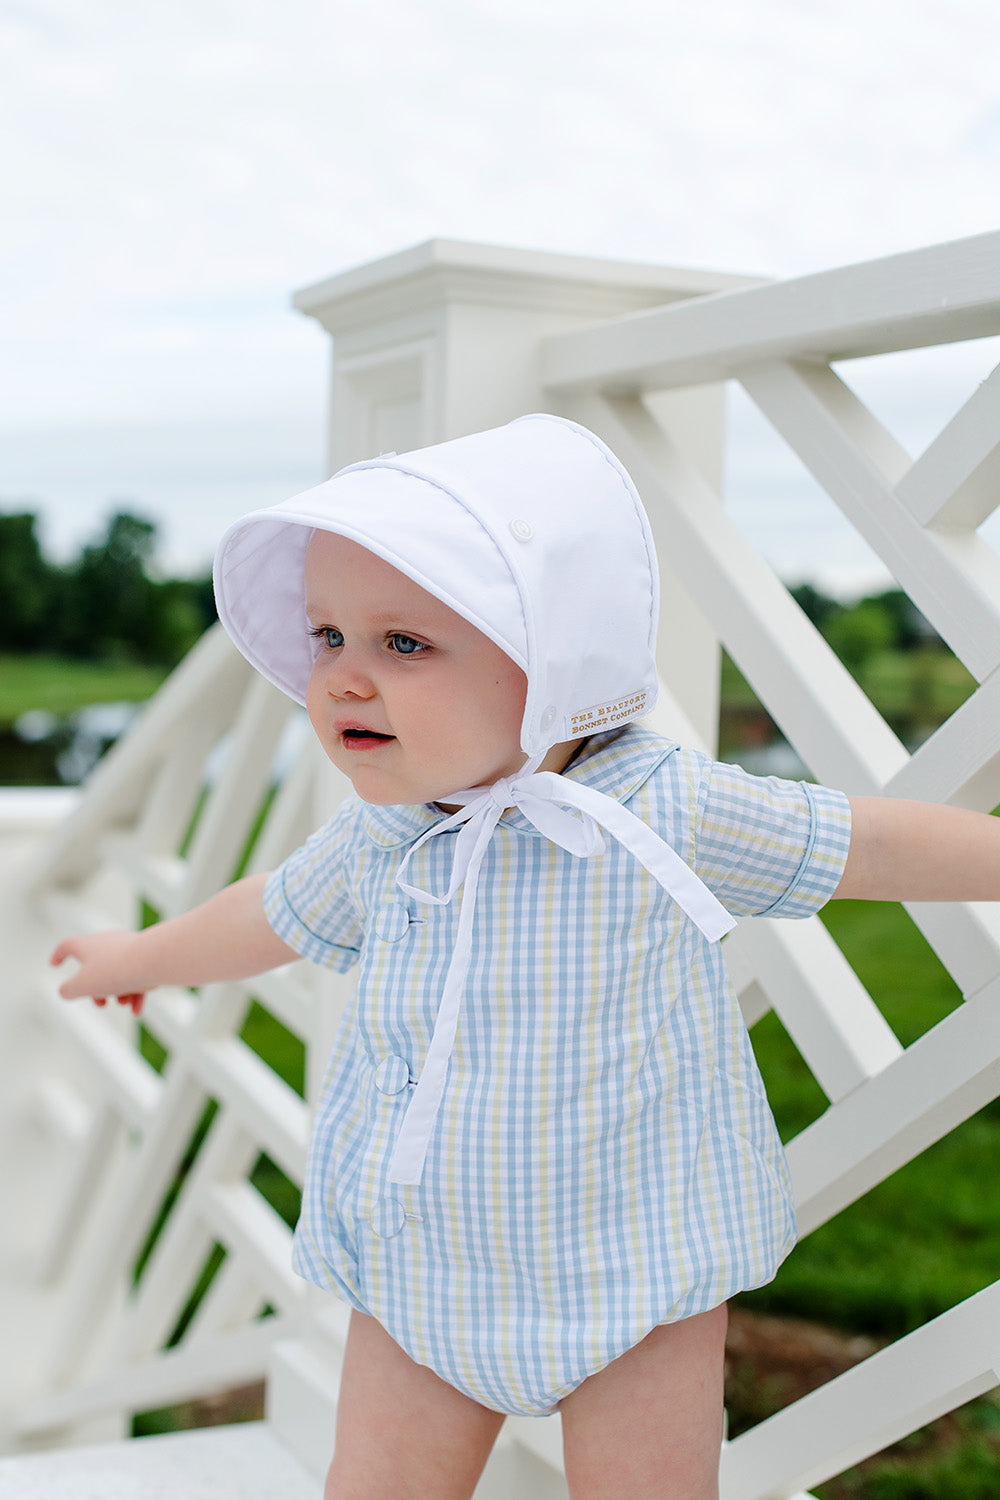 Top 10 bonnet bebe - Mam'Advisor